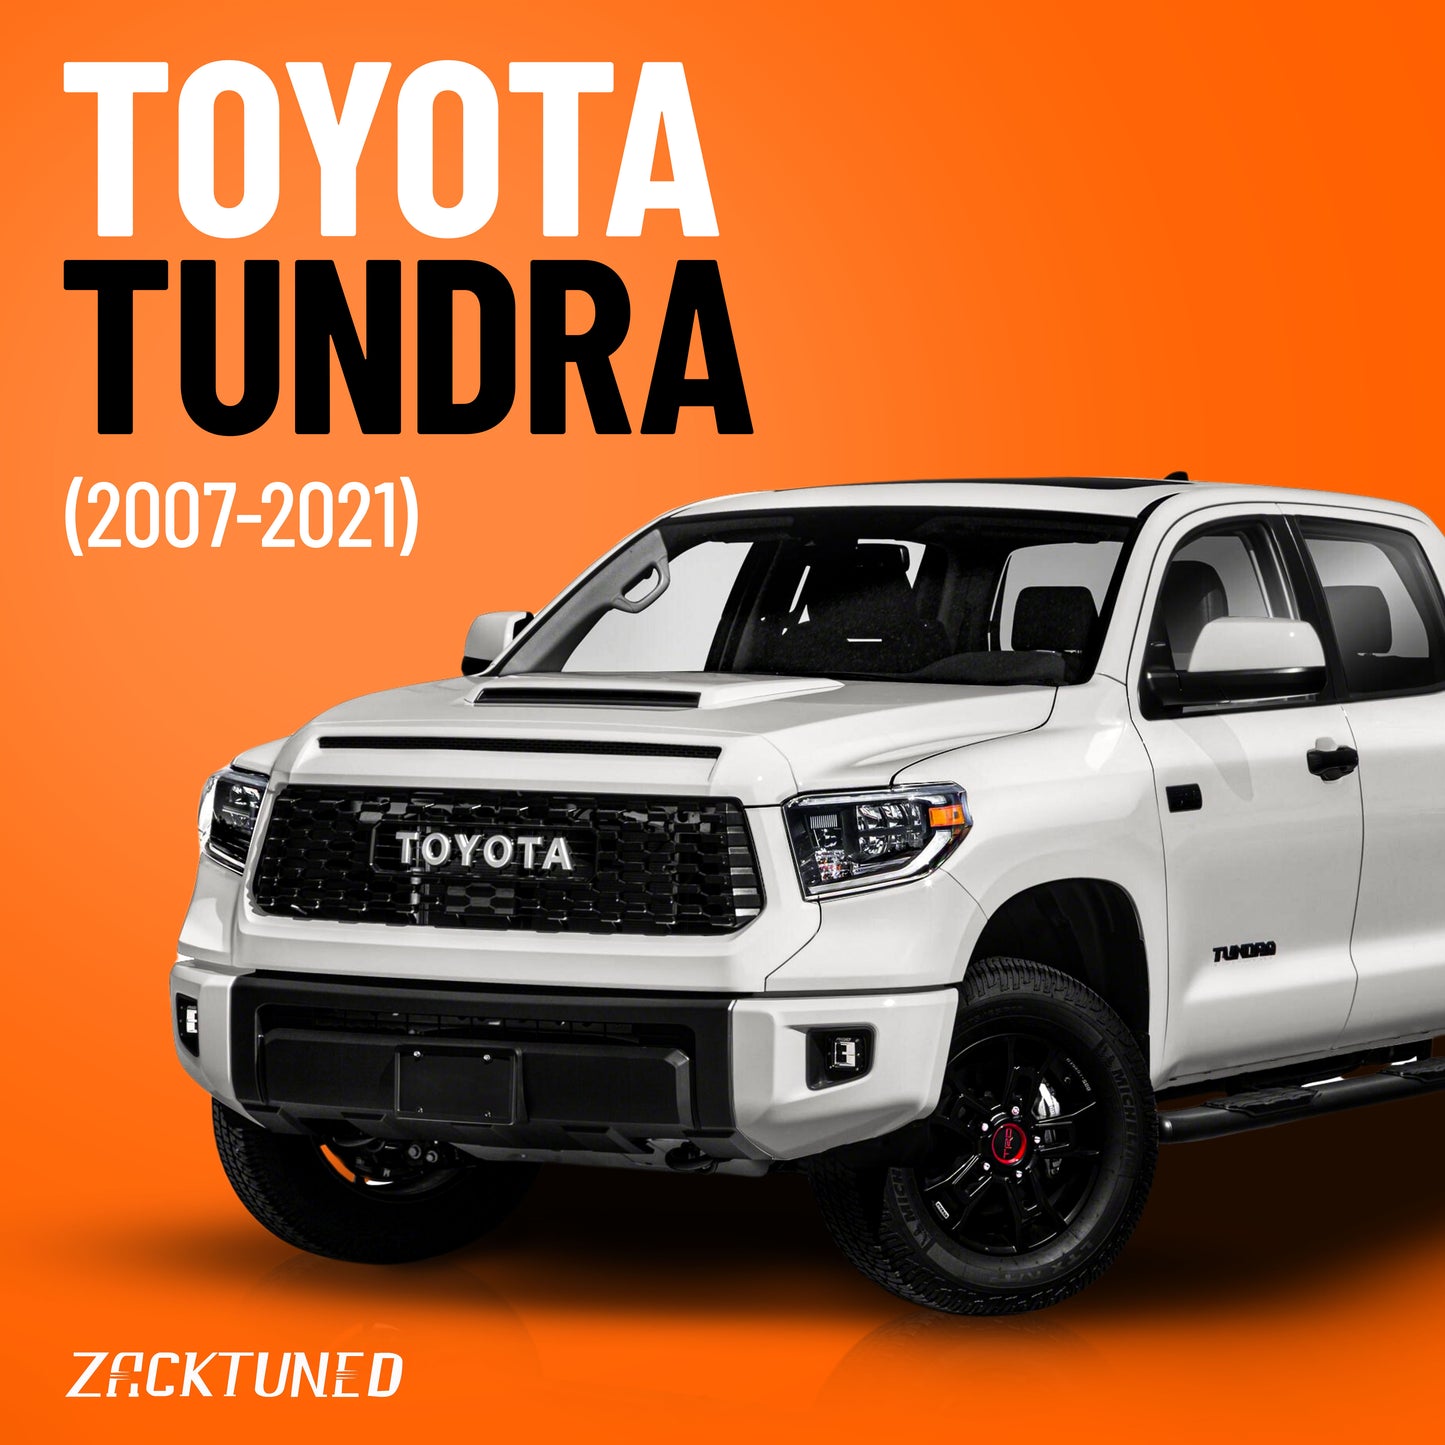 Toyota Tundra (2007-2021)